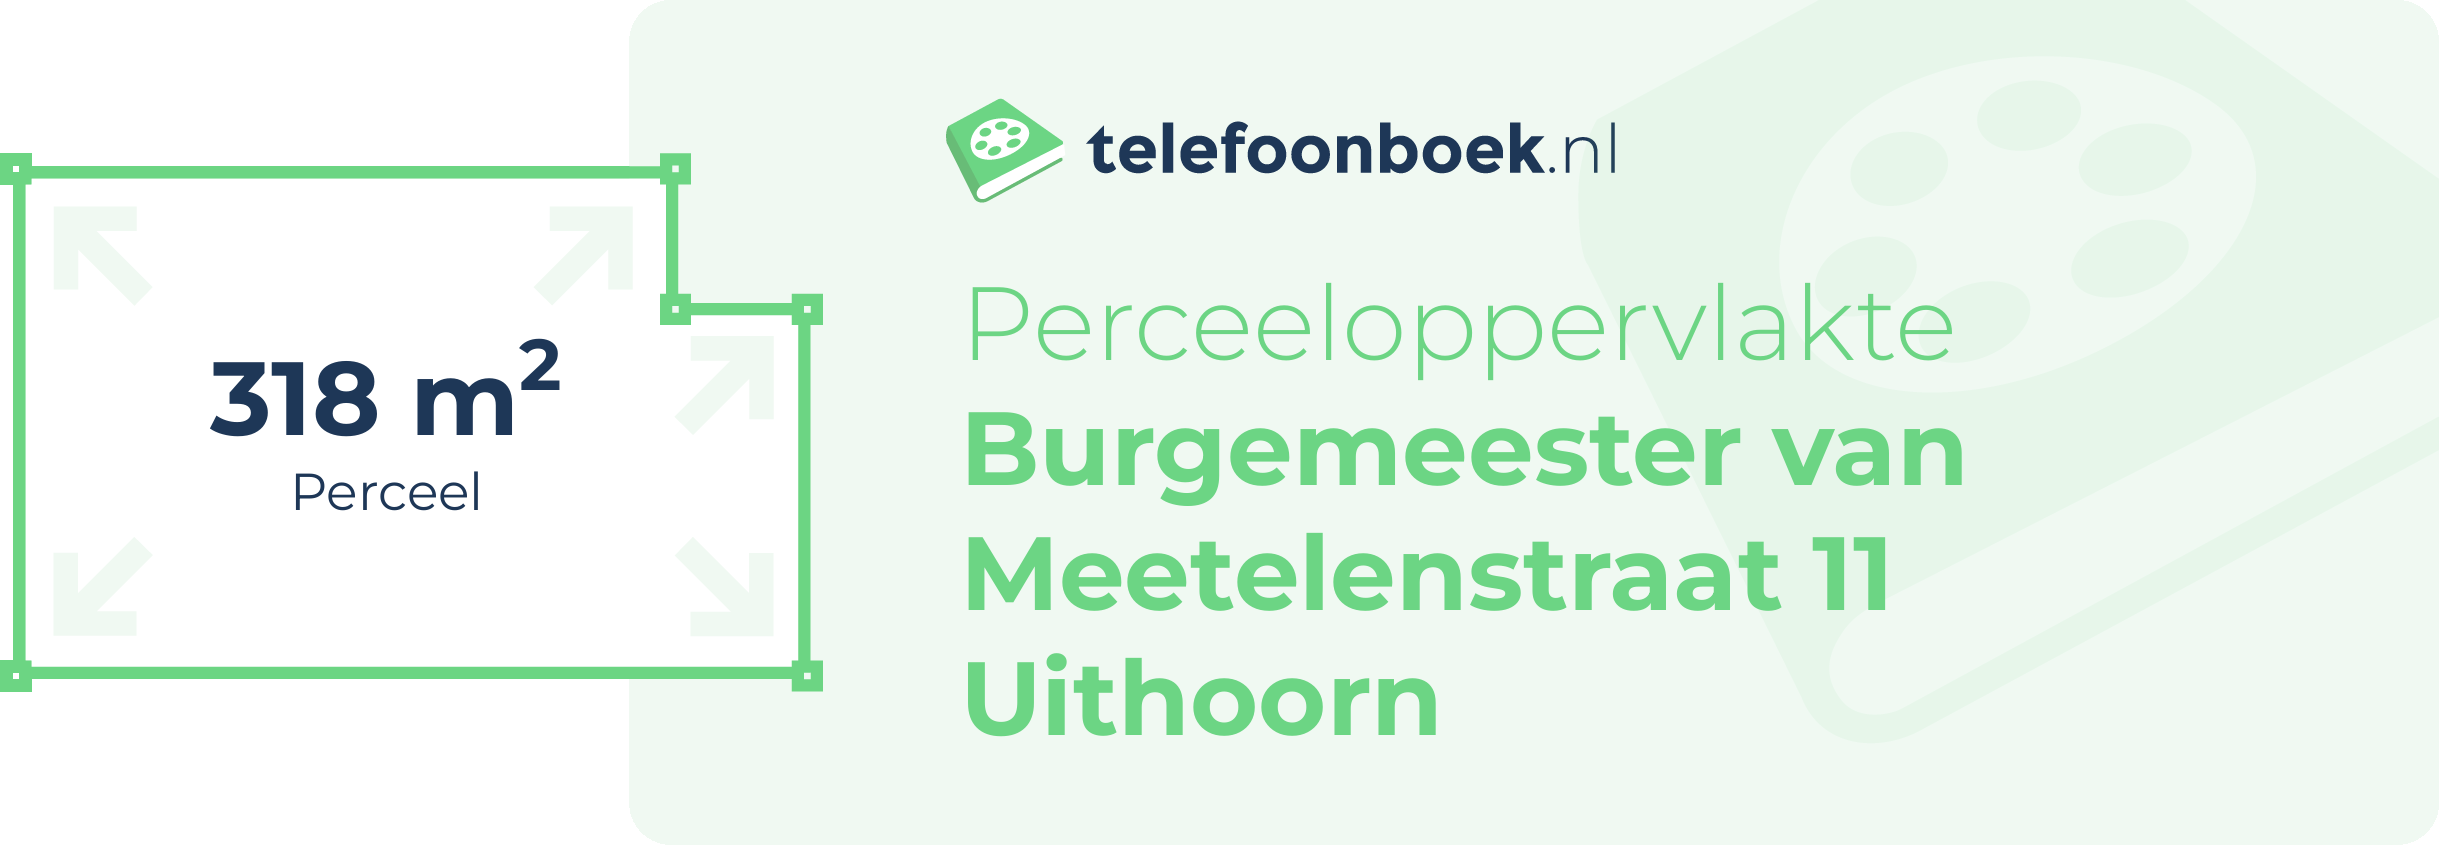 Perceeloppervlakte Burgemeester Van Meetelenstraat 11 Uithoorn